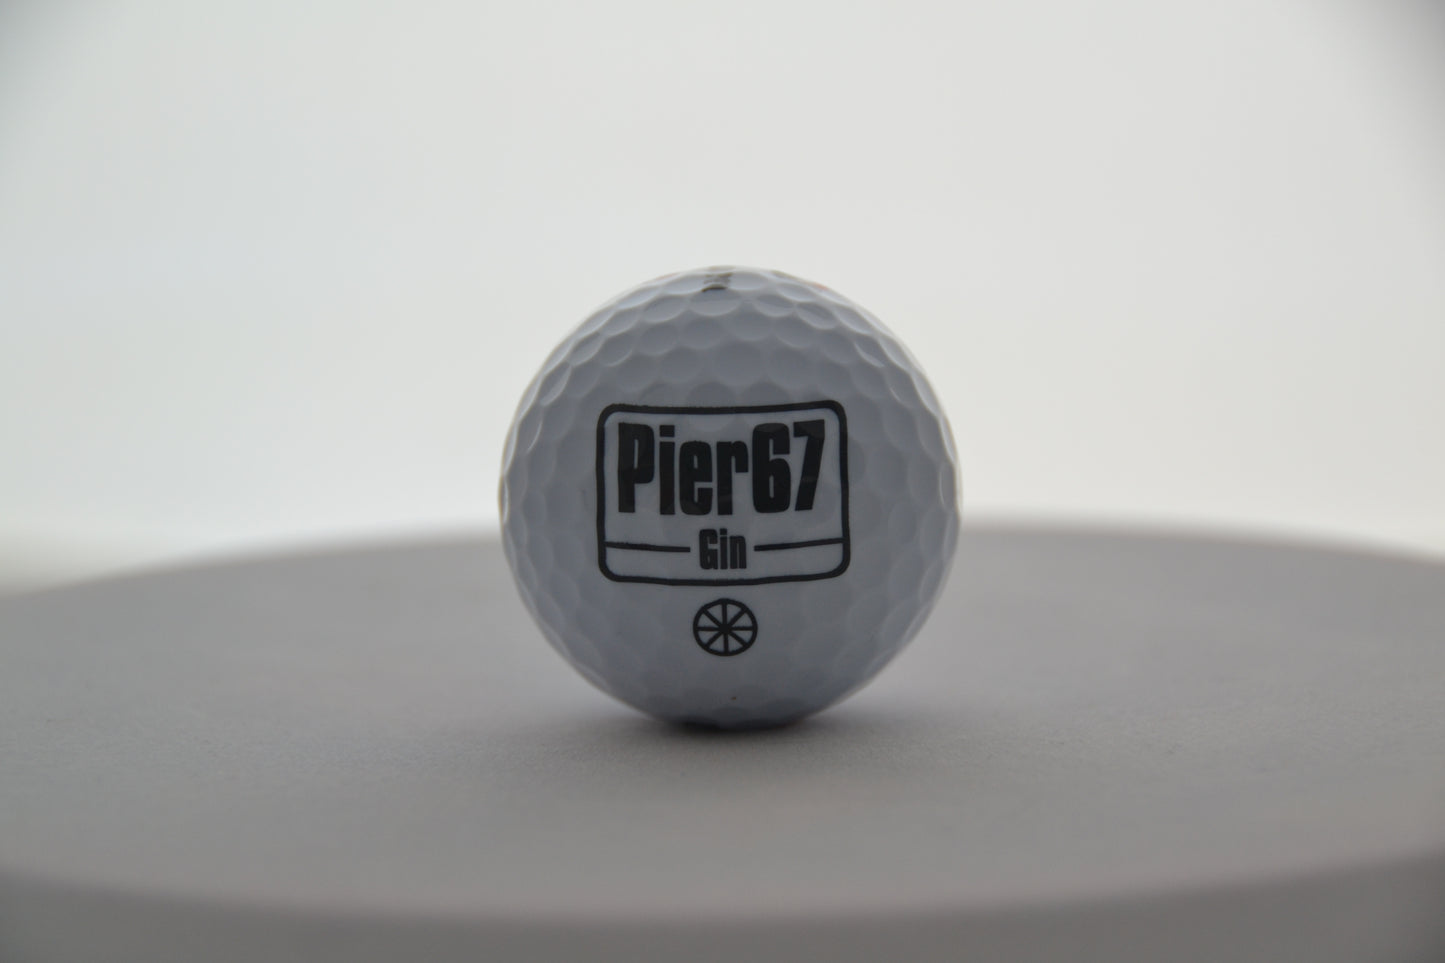 Pallina da golf - Pier67